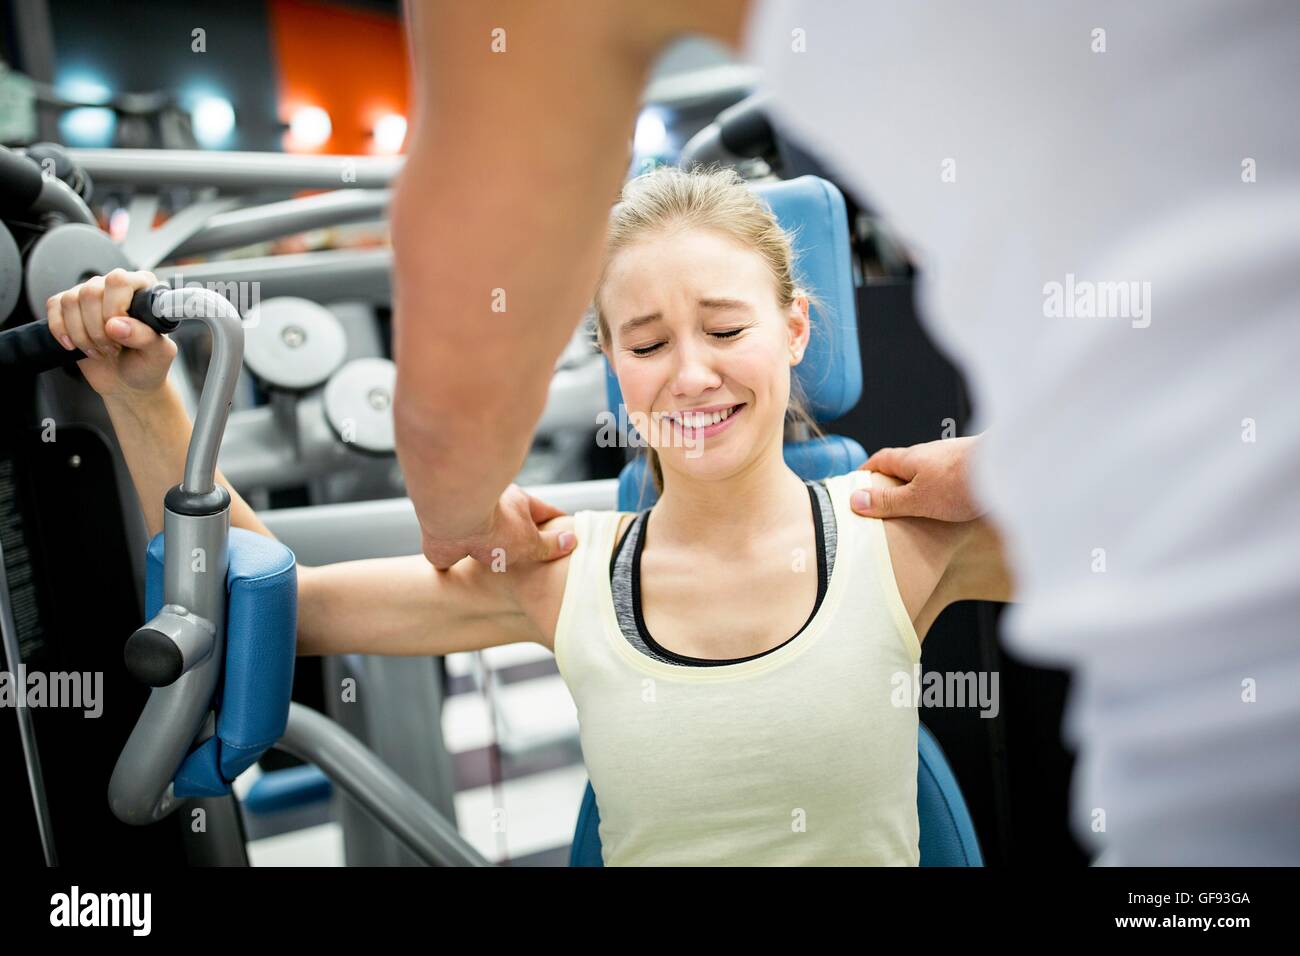 EIGENTUM FREIGEGEBEN. -MODELL VERÖFFENTLICHT. Junge Frau in Schmerzen beim trainieren im Fitnessraum. Stockfoto